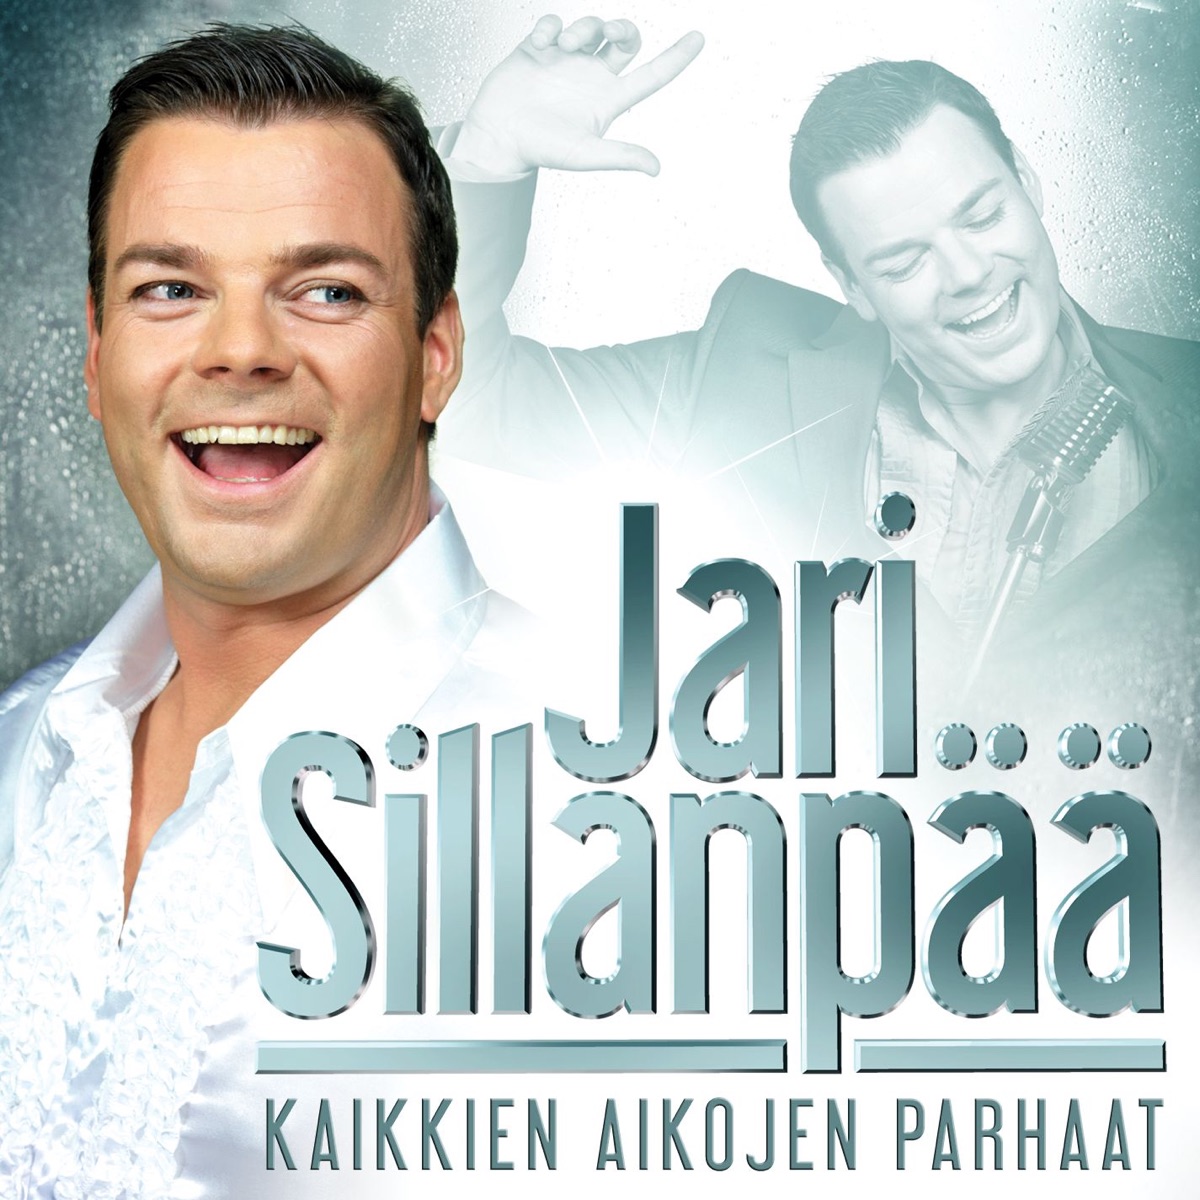 Rakkaudella merkitty mies - Album by Jari Sillanpää - Apple Music